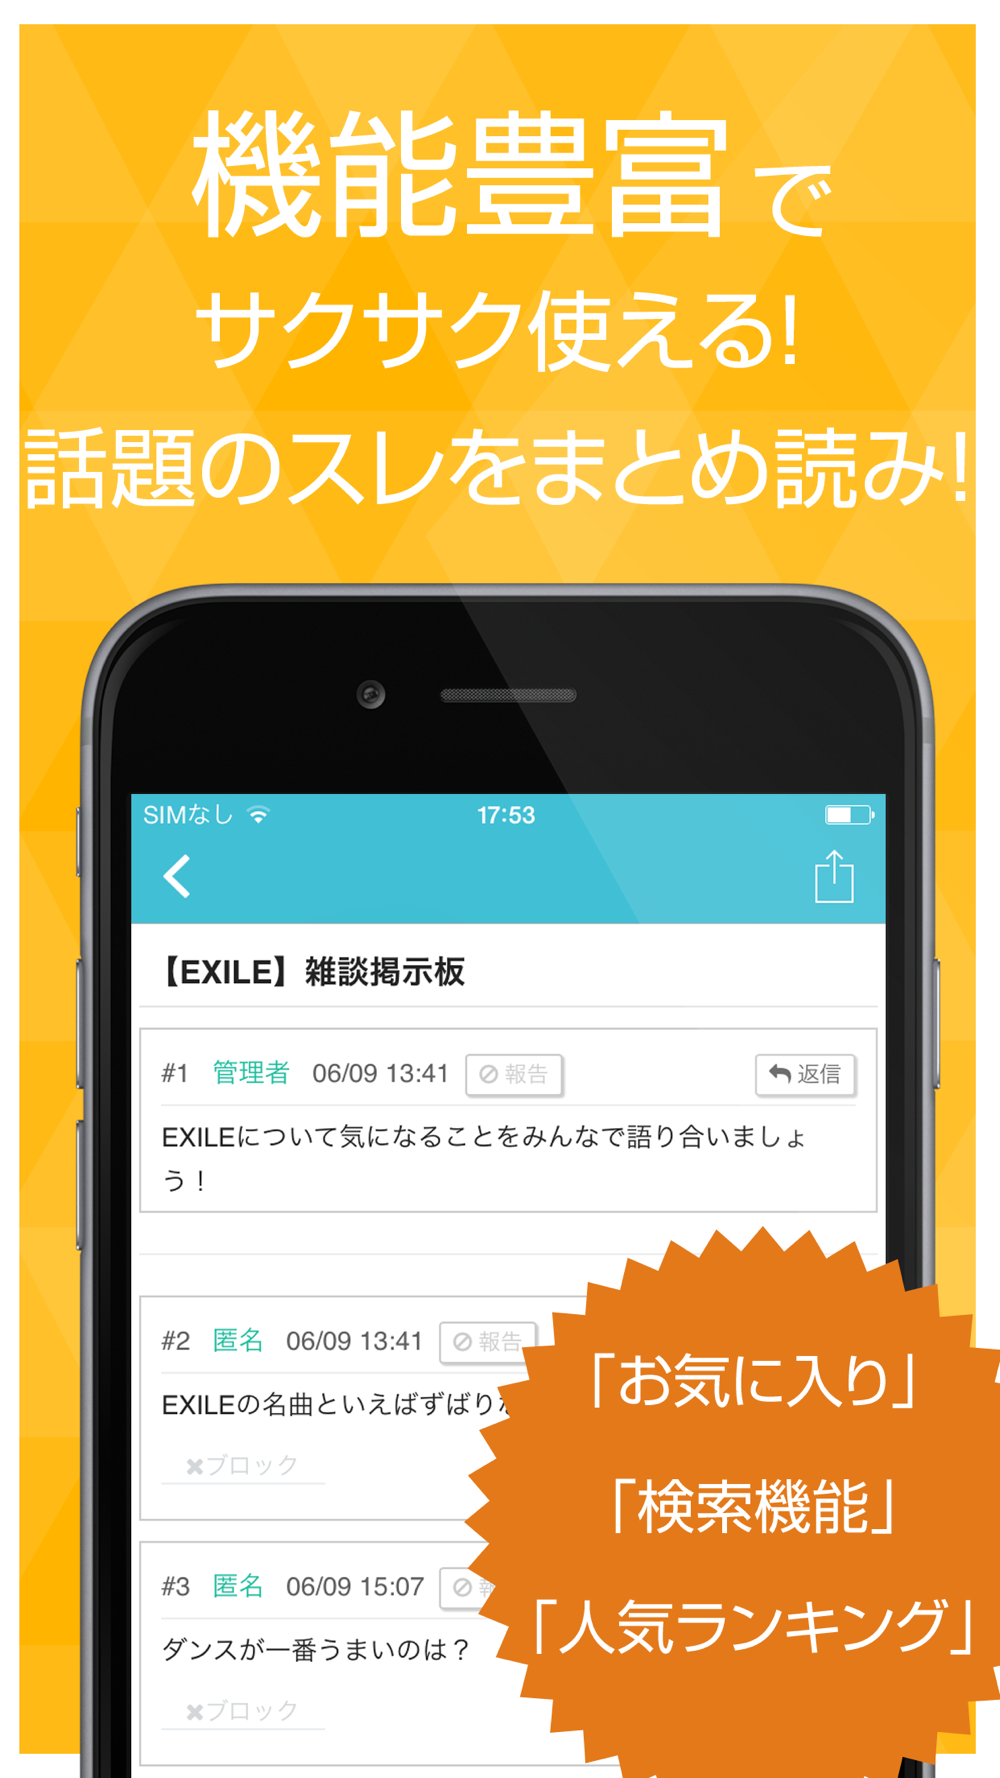 ファン交流掲示板 For Exile エグザイル 三代目 J Soul Brothers Jsb Free Download App For Iphone Steprimo Com